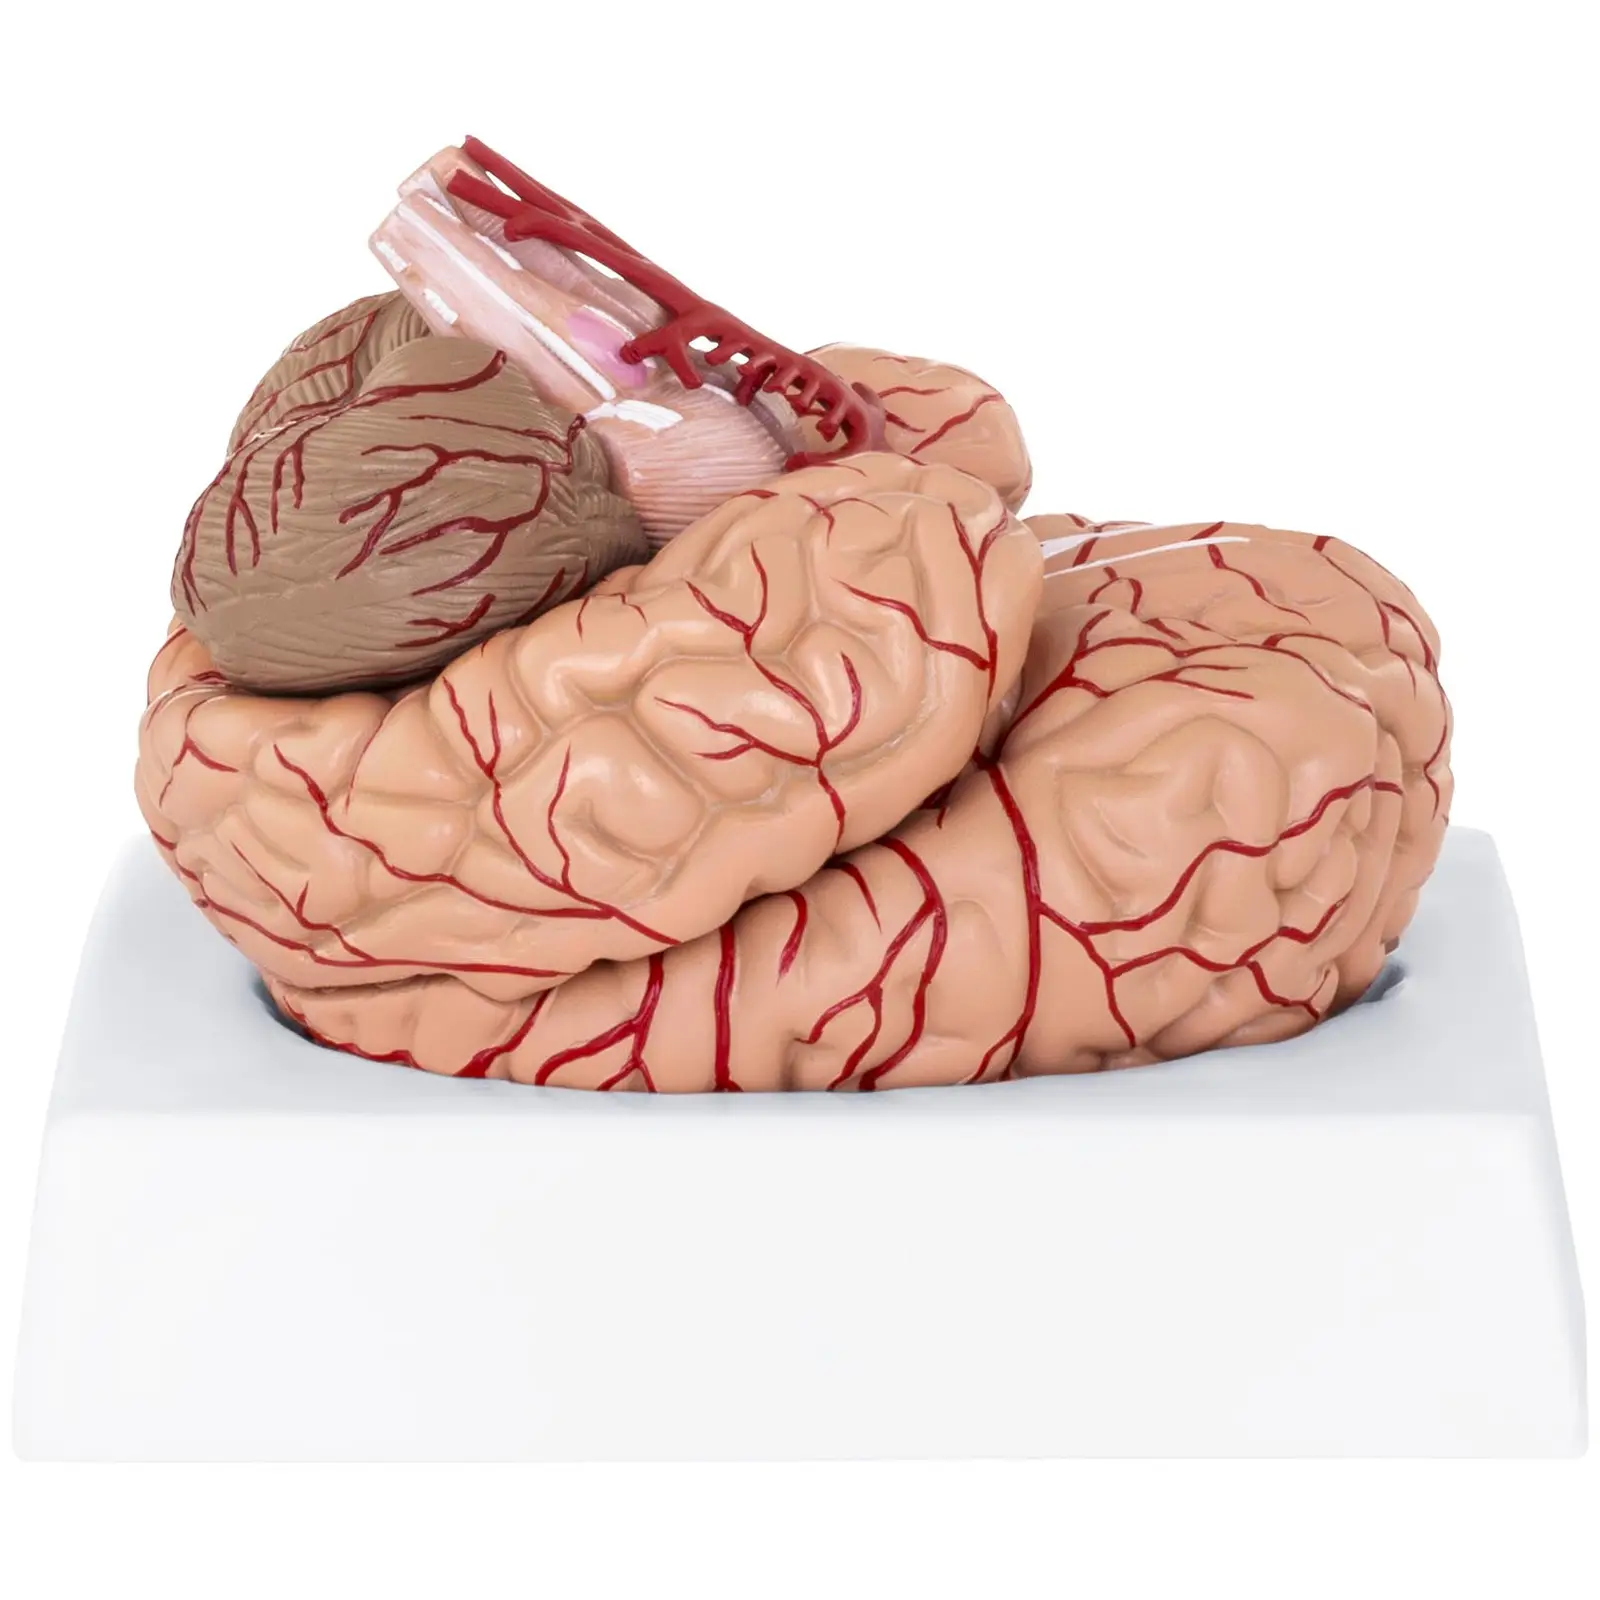 Maquette anatomique cerveau humain - 9 segments - grandeur nature